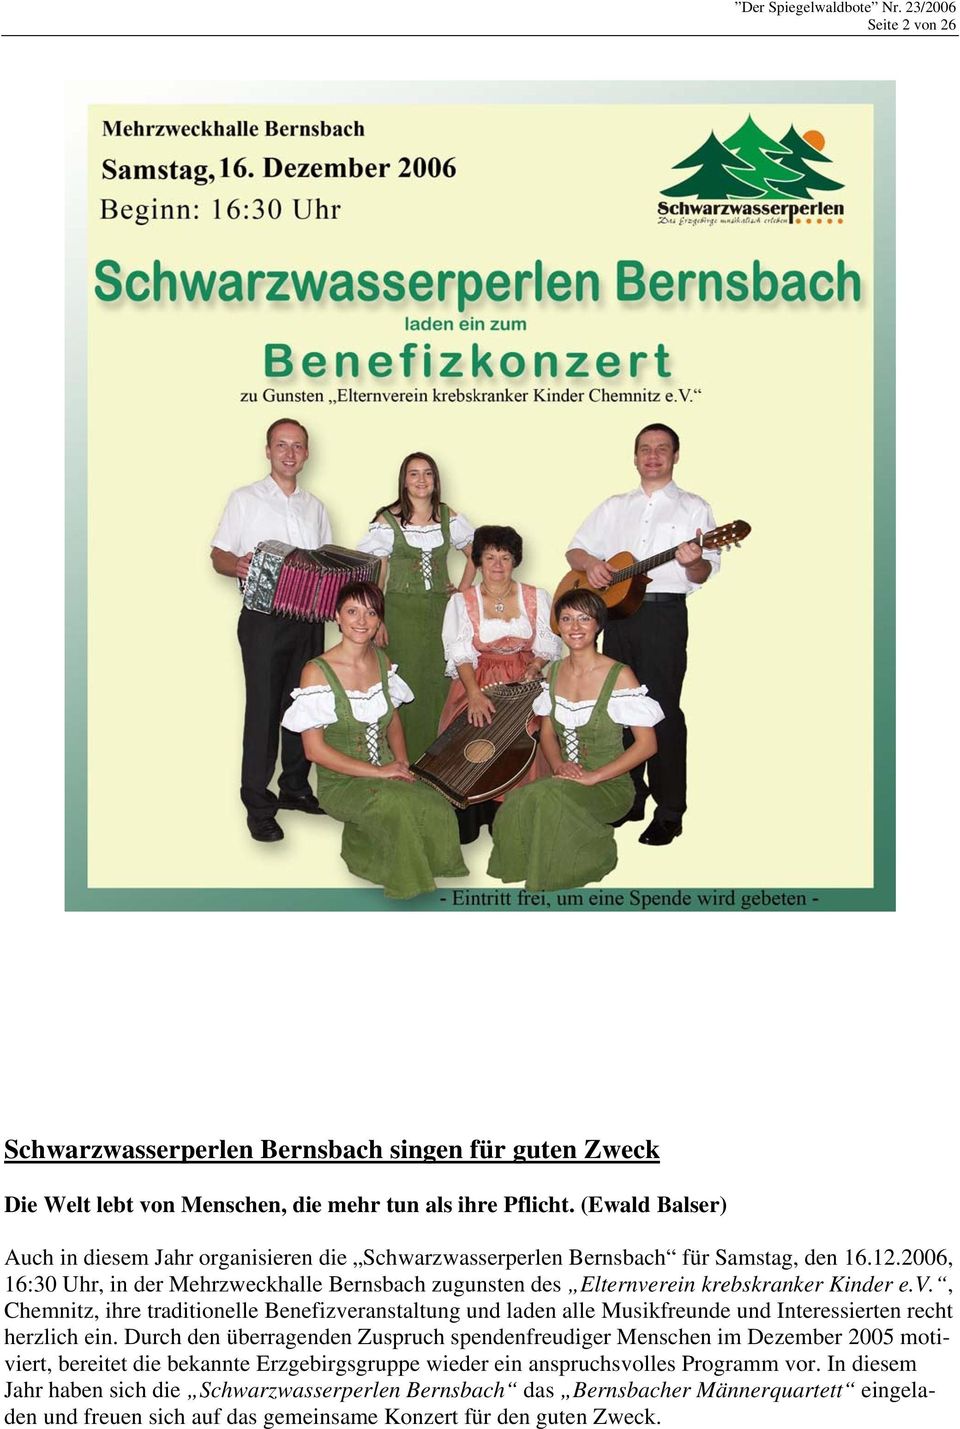 2006, 16:30 Uhr, in der Mehrzweckhalle Bernsbach zugunsten des Elternverein krebskranker Kinder e.v., Chemnitz, ihre traditionelle Benefizveranstaltung und laden alle Musikfreunde und Interessierten recht herzlich ein.